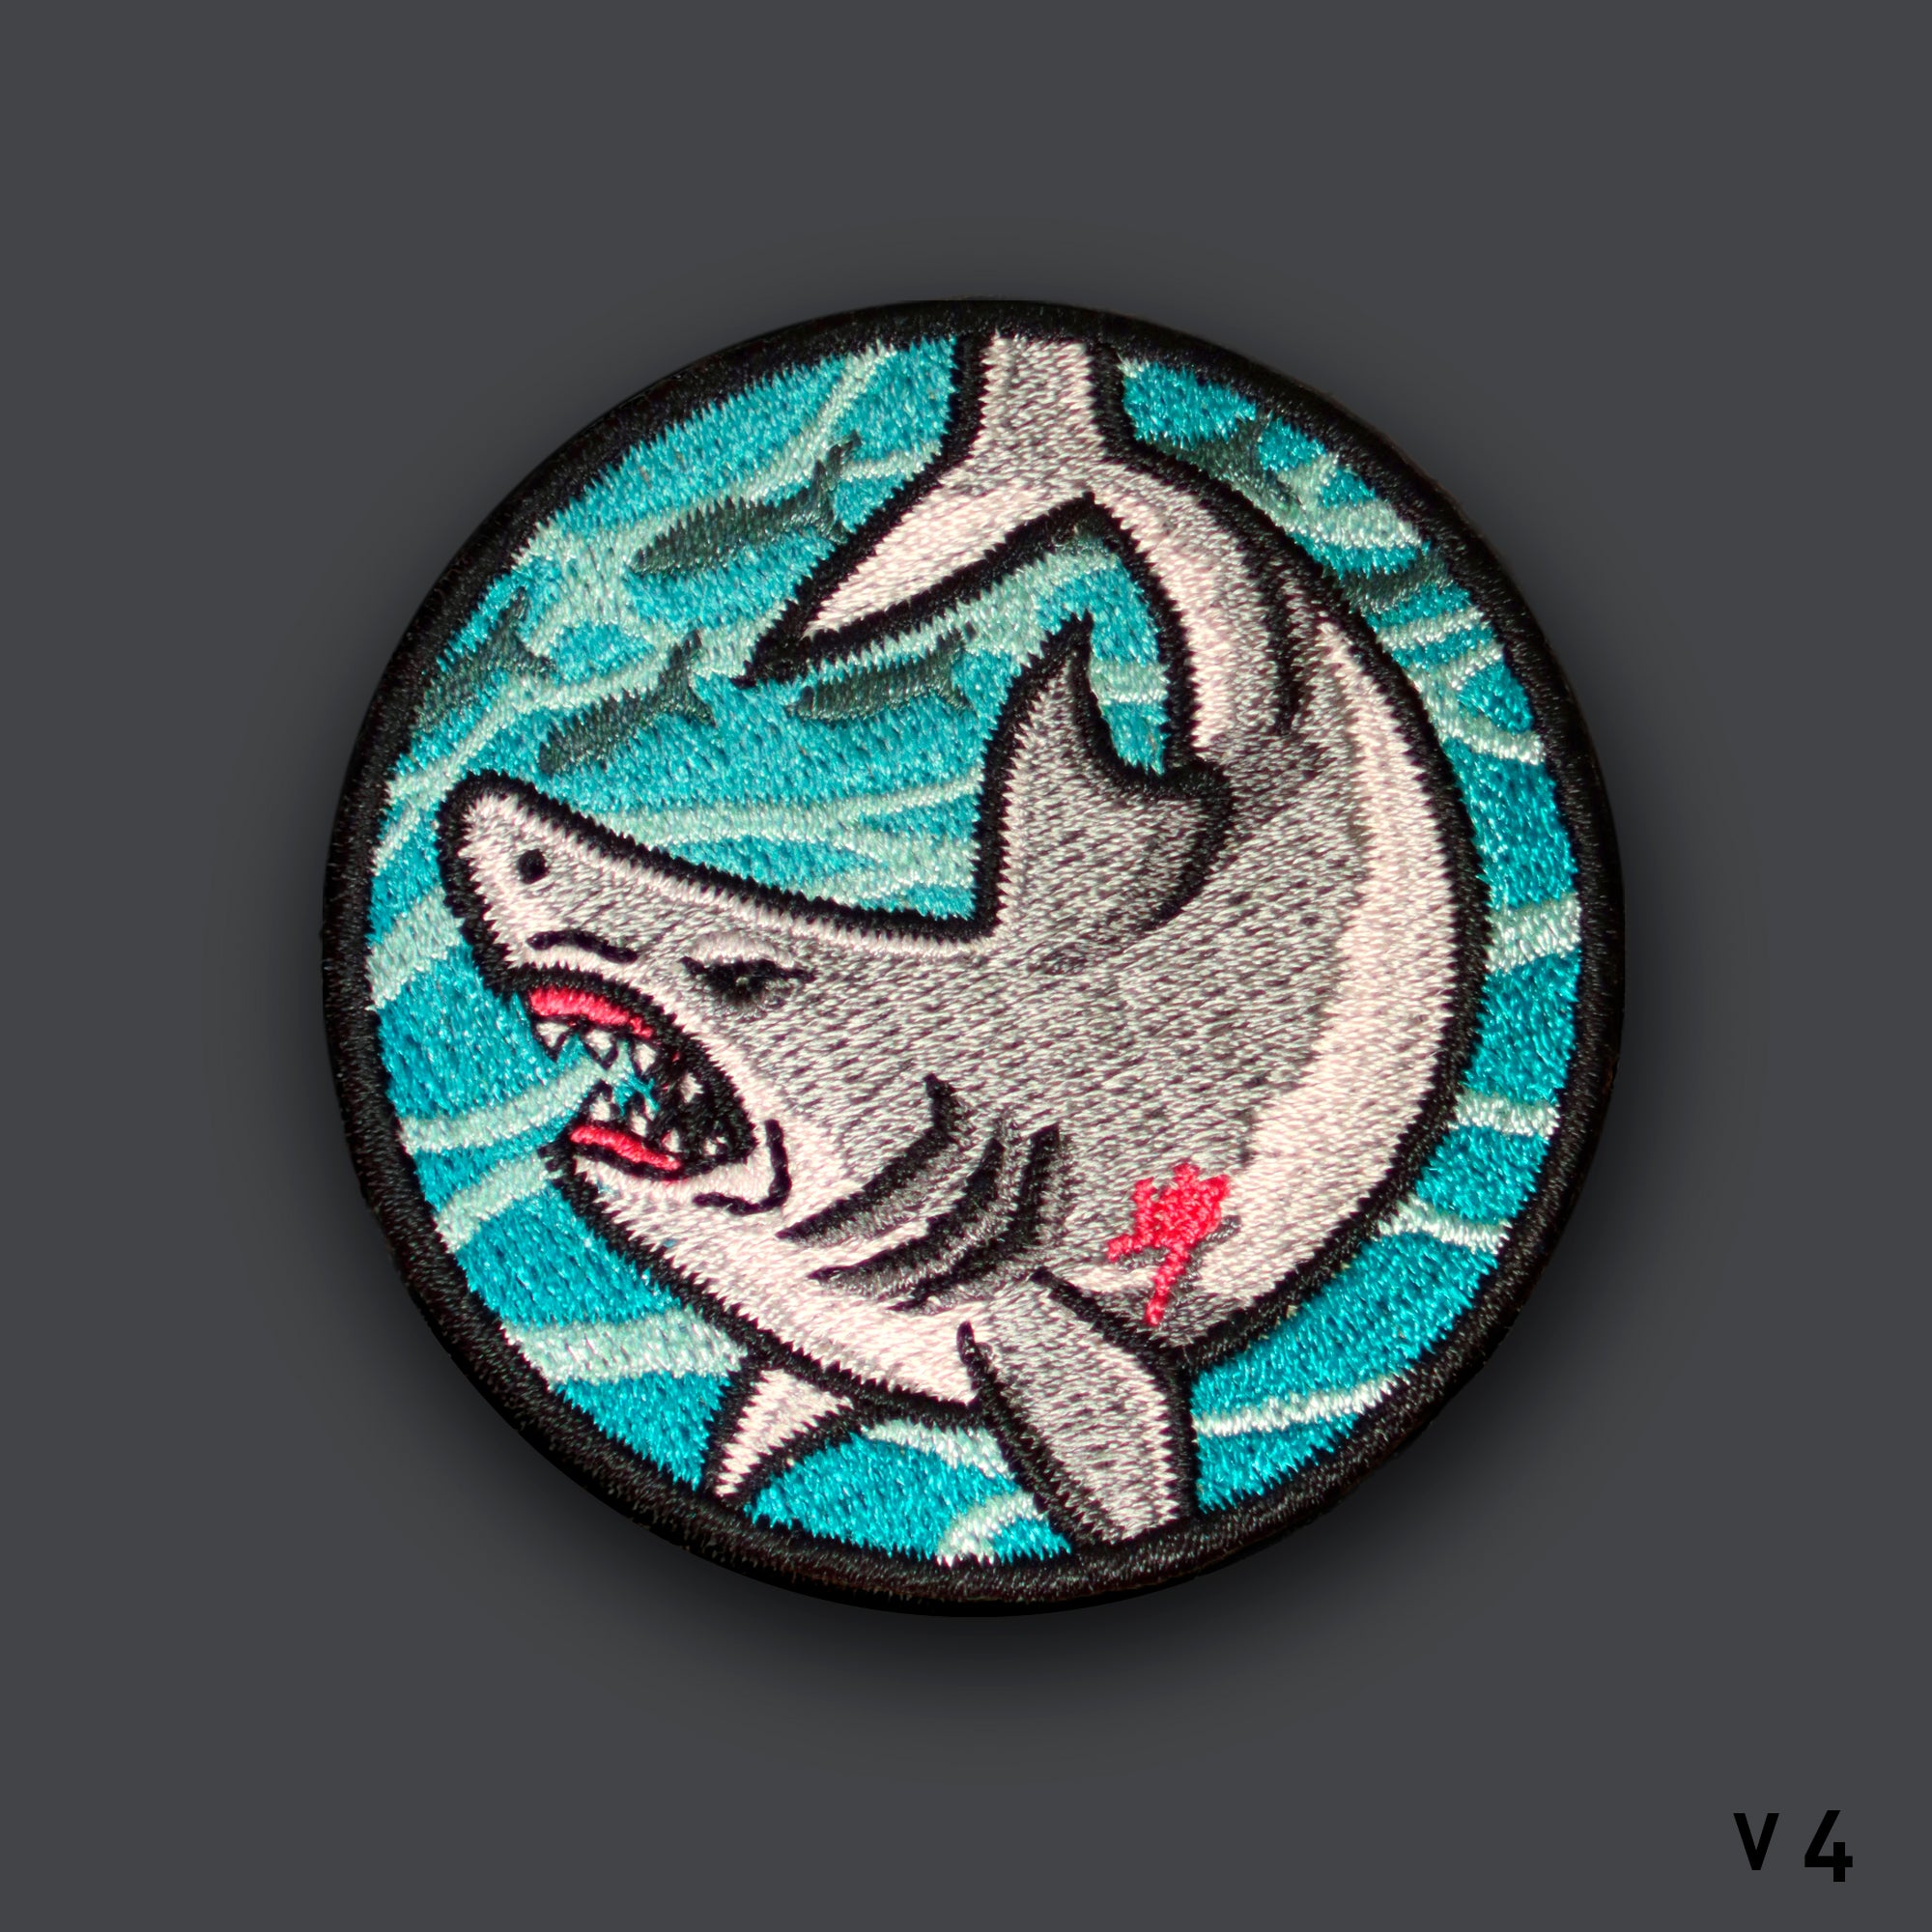 Wildlife V4 "SHARK WEEK" Morale Patch